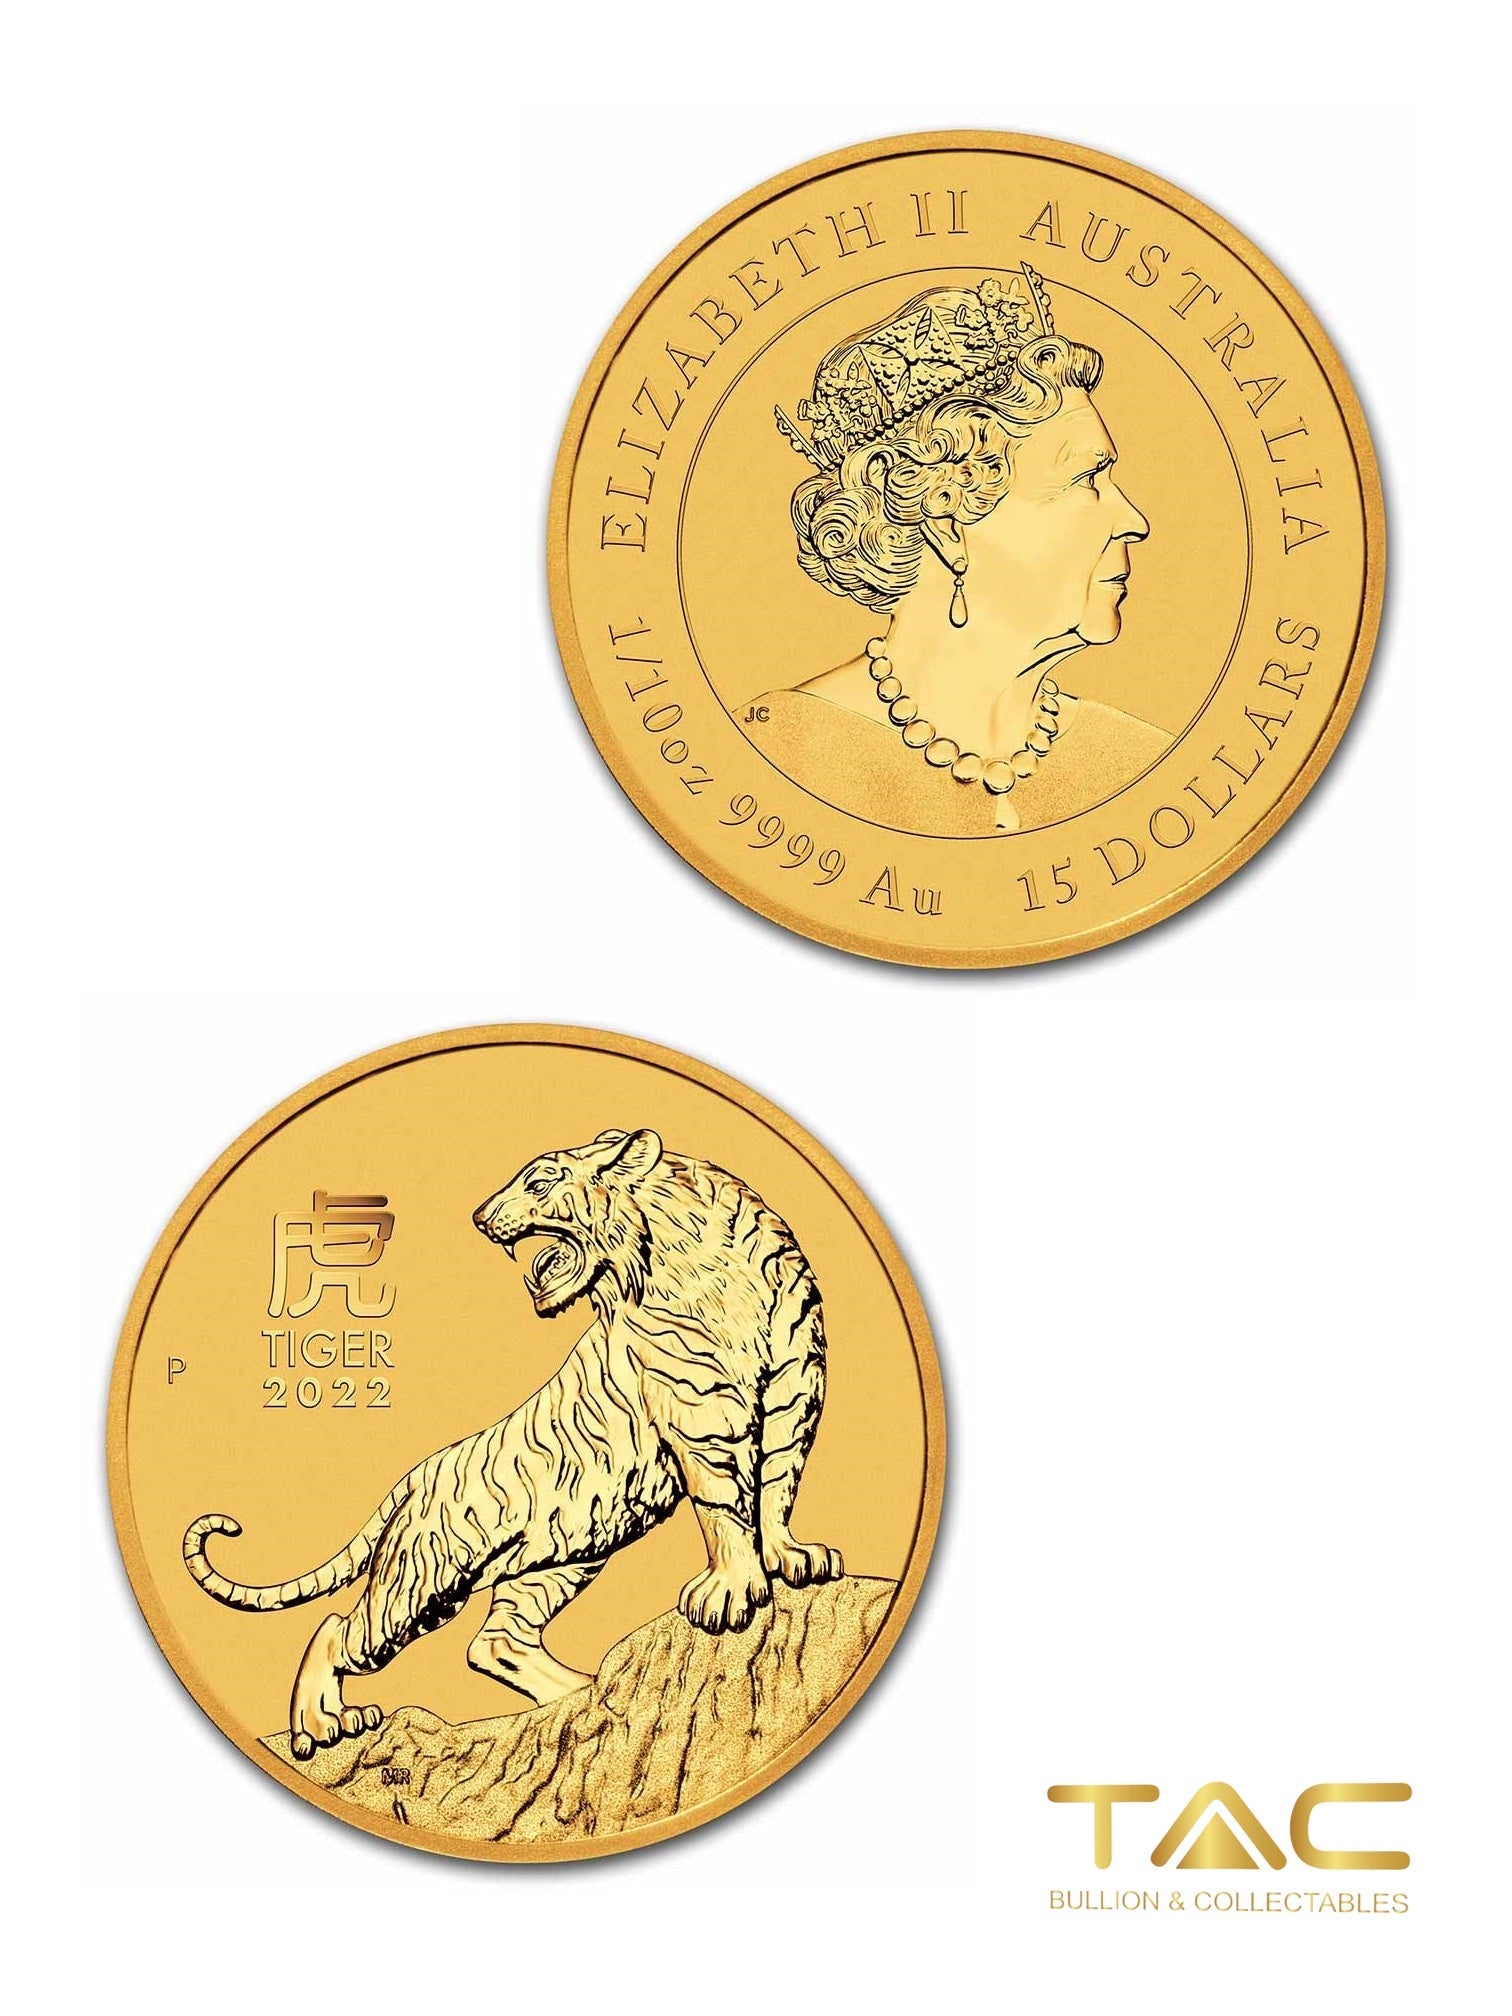 1/4 oz Gold Coin - 2022 Luna Tiger - Perth Mint